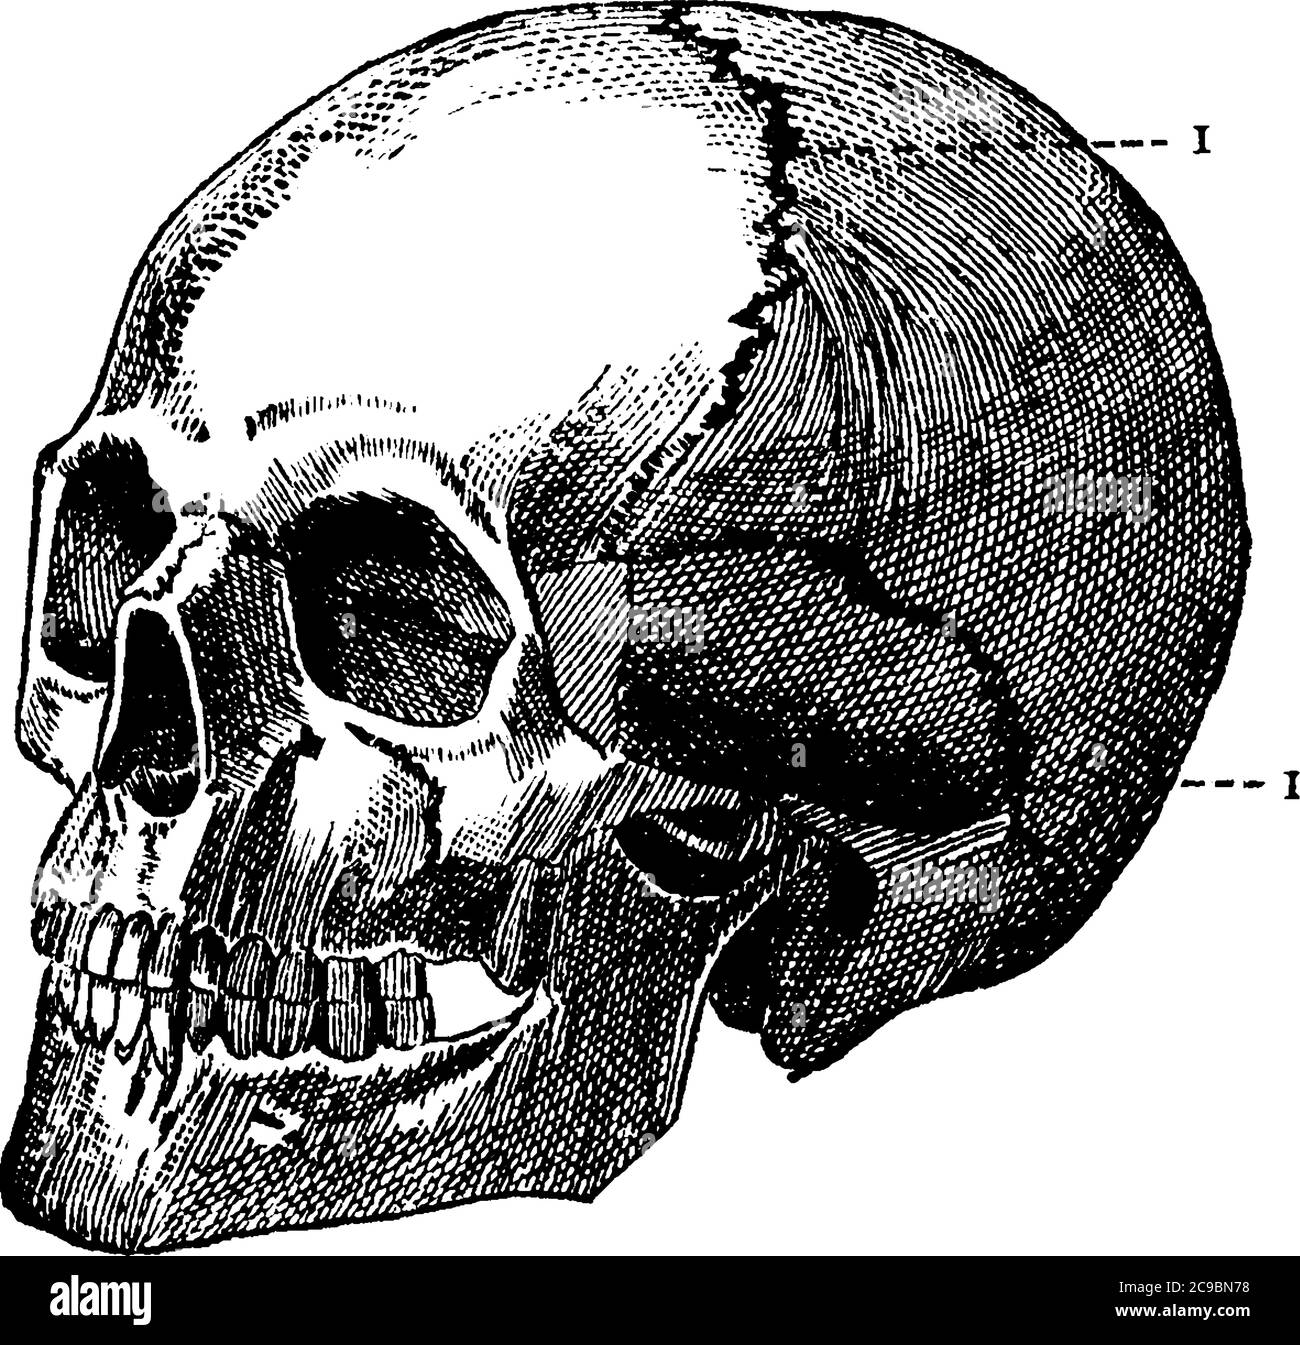 Una rappresentazione tipica di un cranio umano, una struttura ossea che forma la testa in vertebrati, disegno di linee vintage o illustrazione dell'incisione. Illustrazione Vettoriale